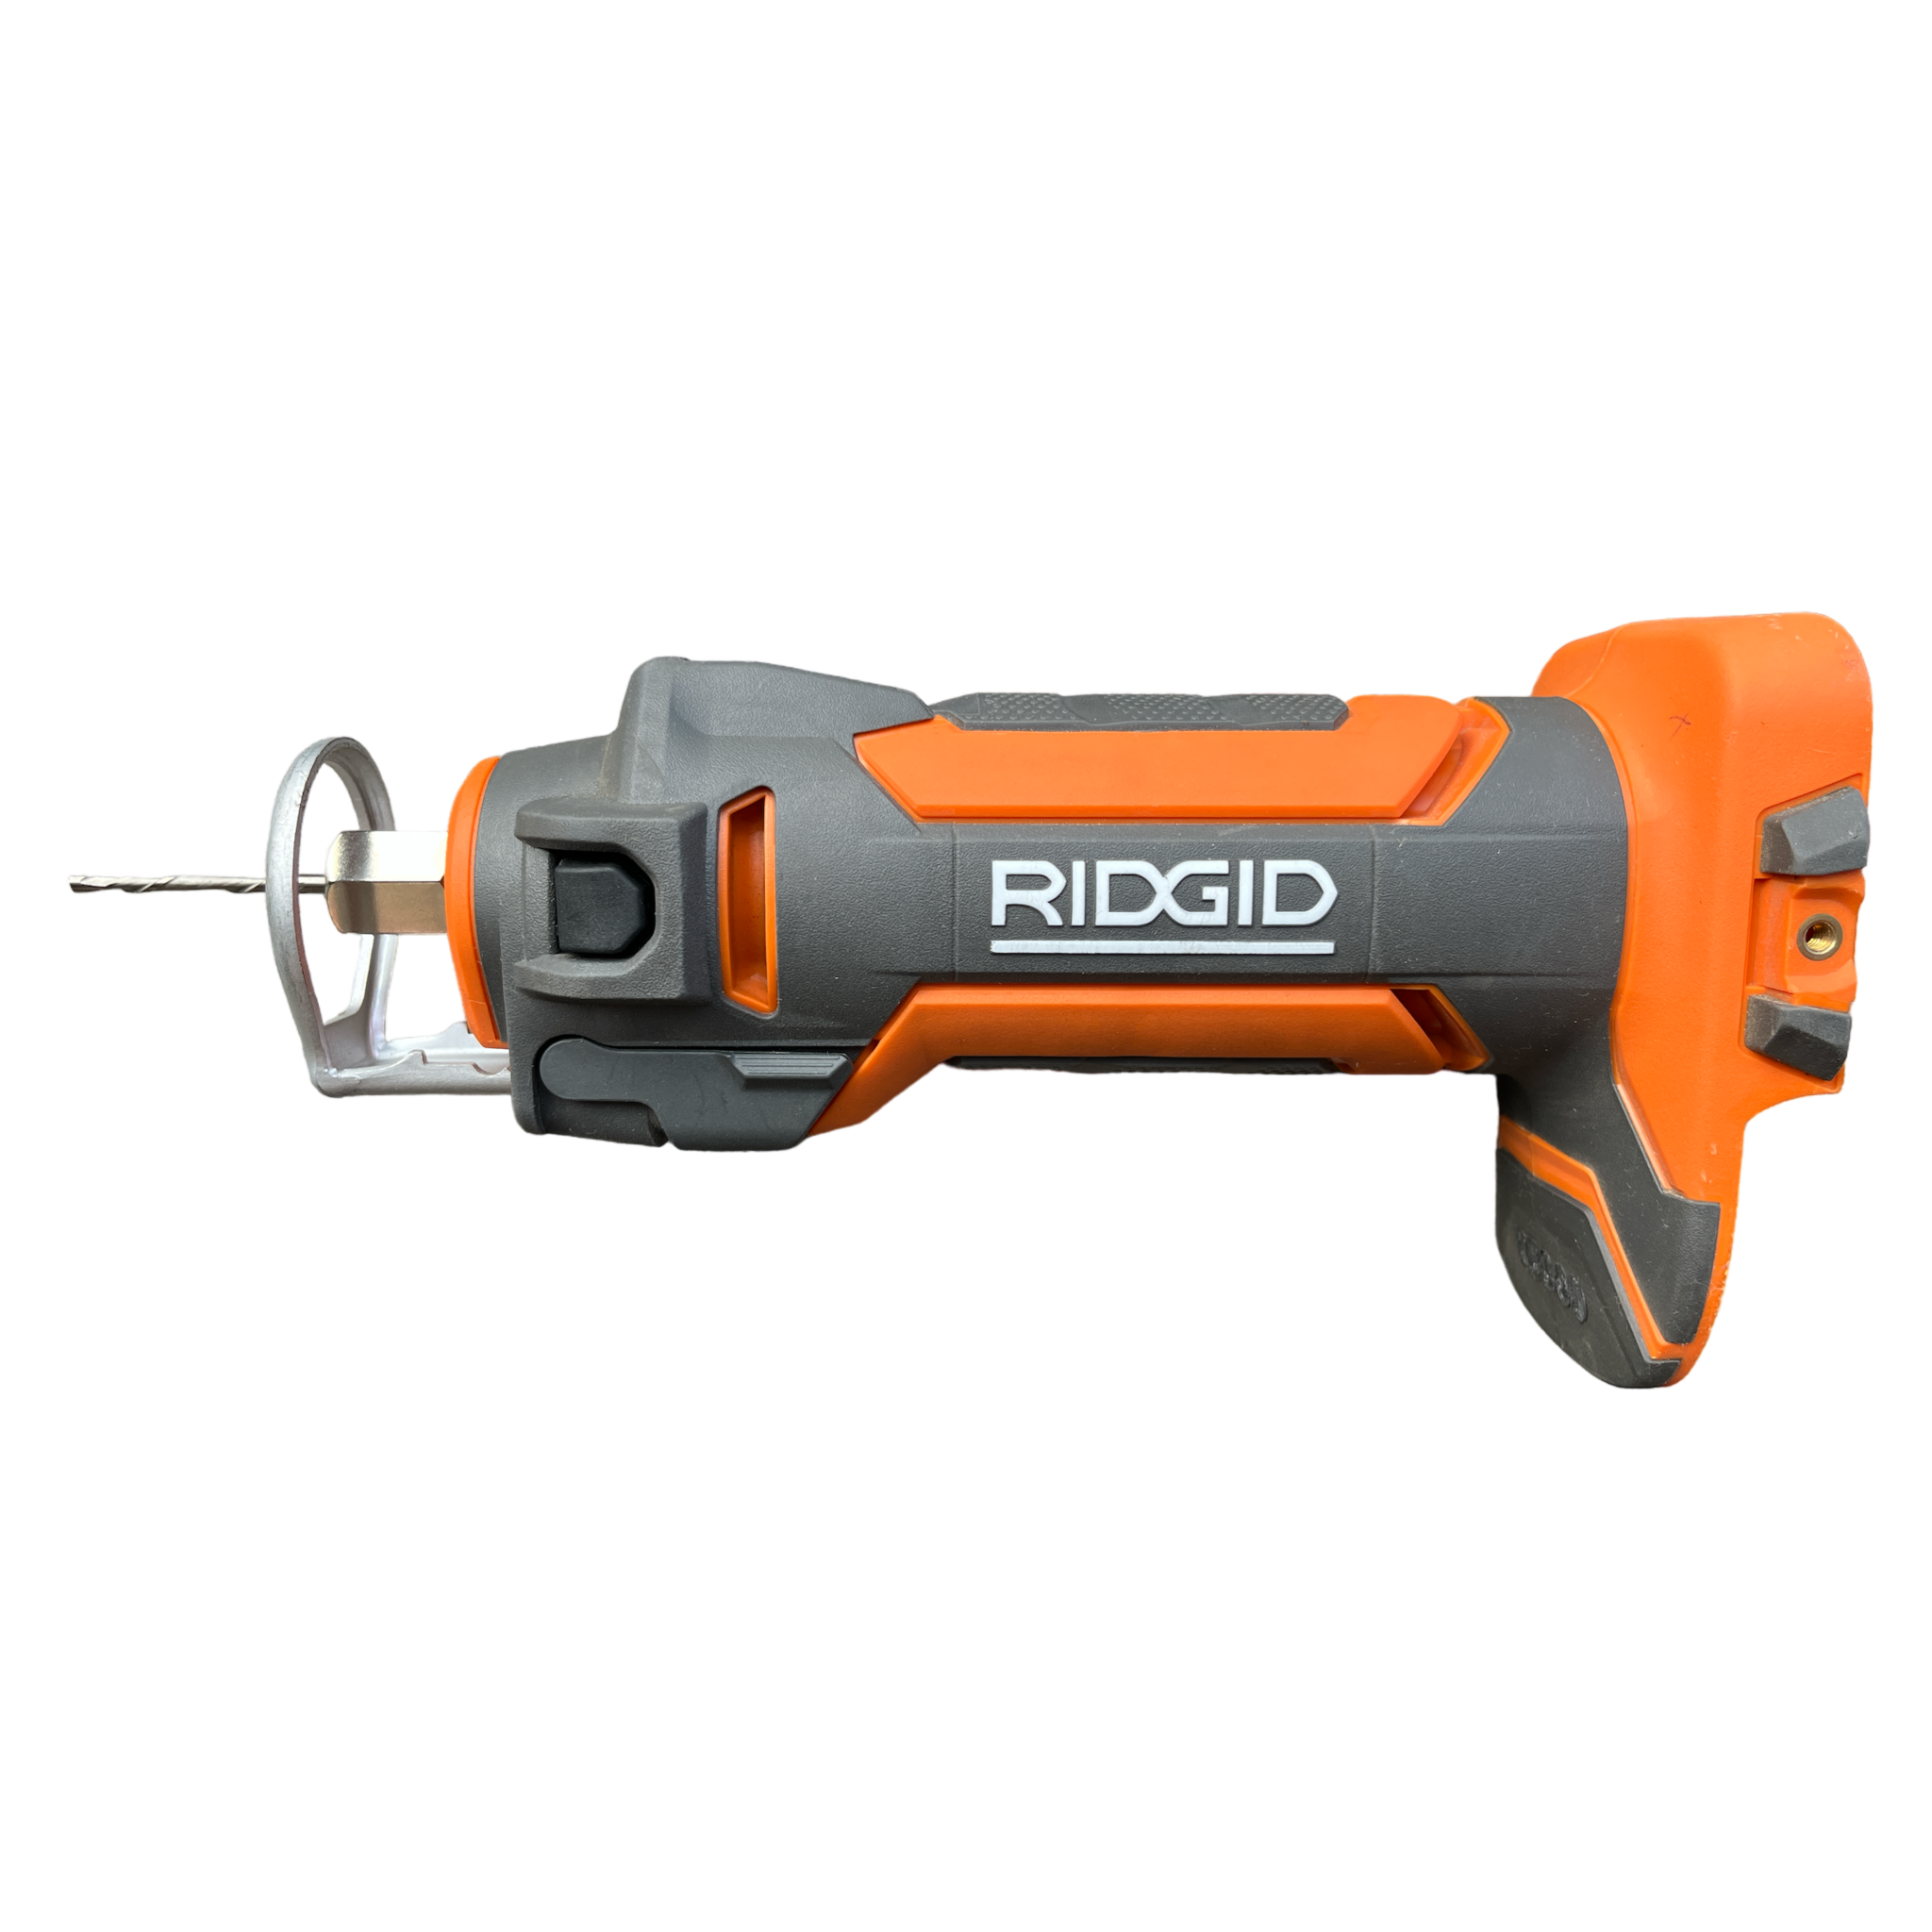 RIDGID 18V Drywall Cut-Out Tool R84730B - The Home Depot